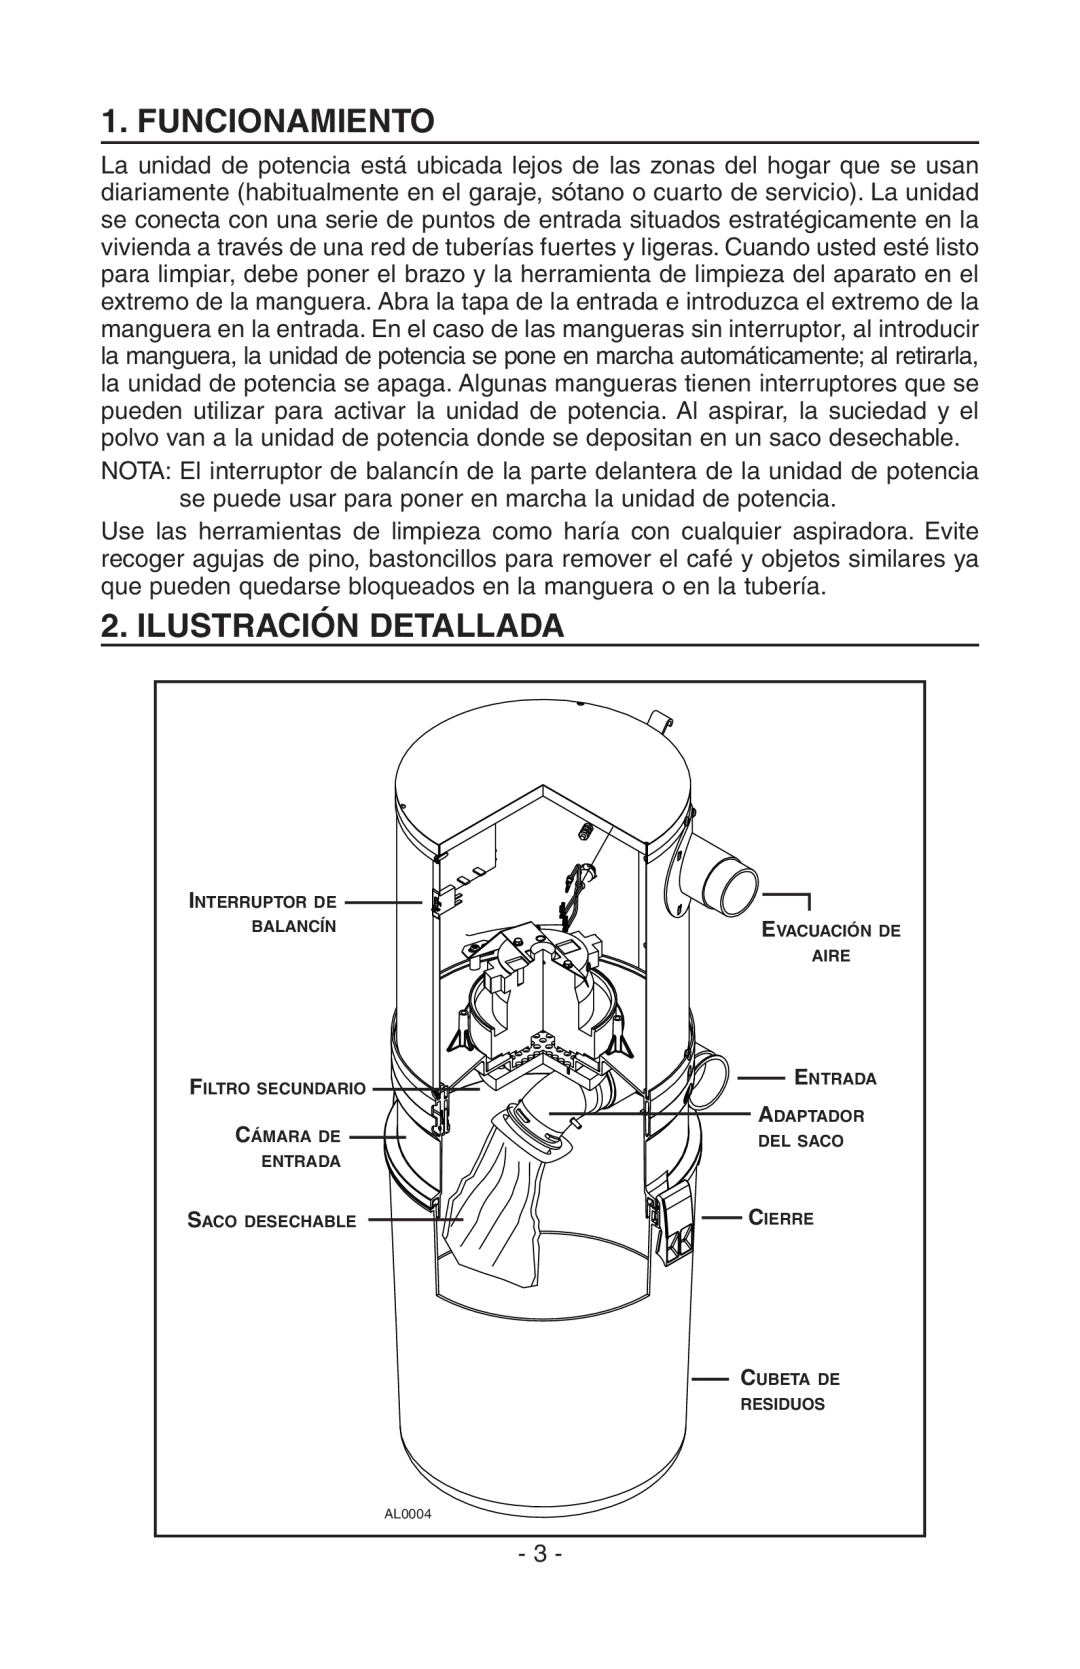 NuTone CV400, SFDB-DC manual Funcionamiento, Ilustración Detallada 